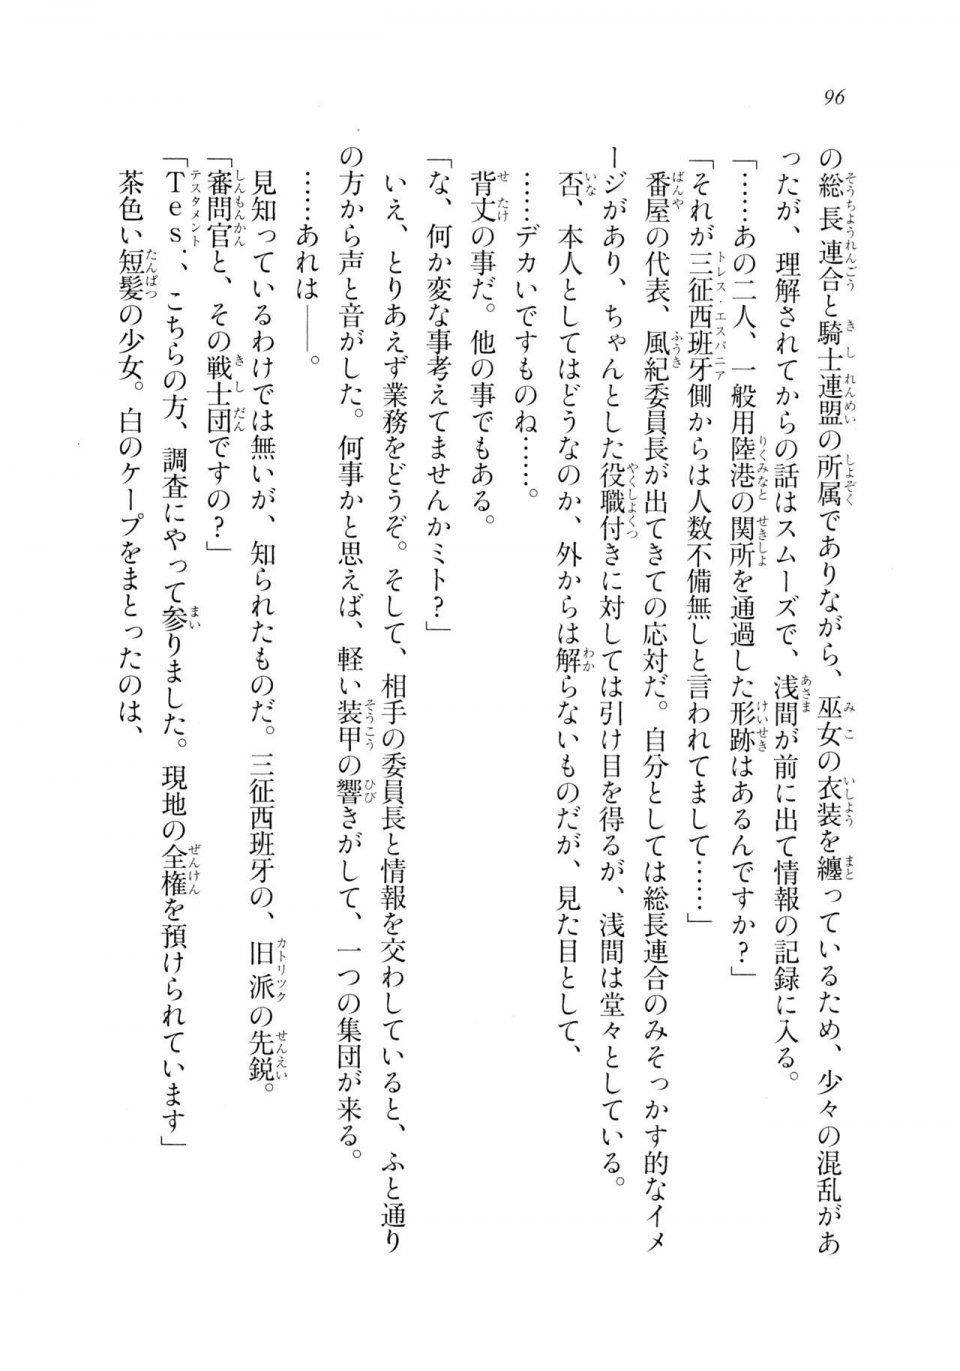 Kyoukai Senjou no Horizon LN Sidestory Vol 2 - Photo #94